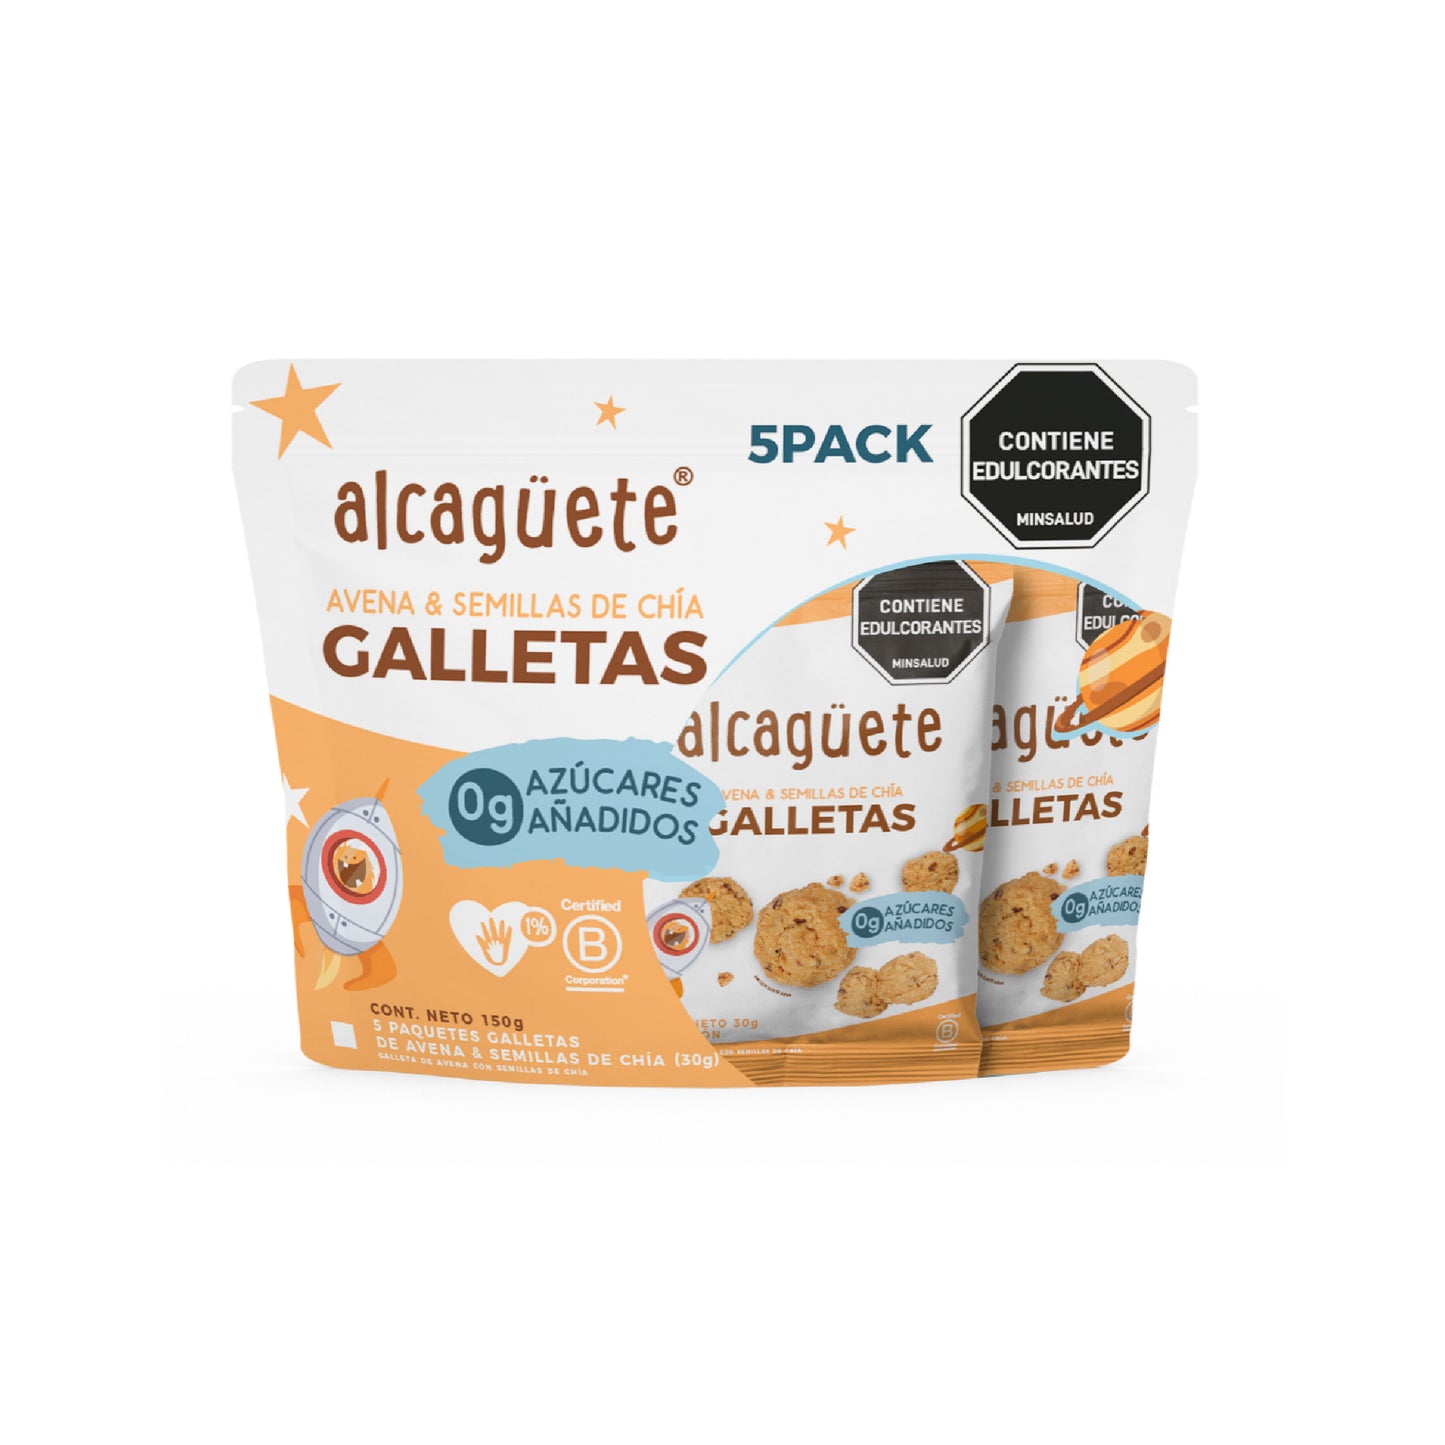 5 Pack Galleta de Avena y Chia Alcaguete